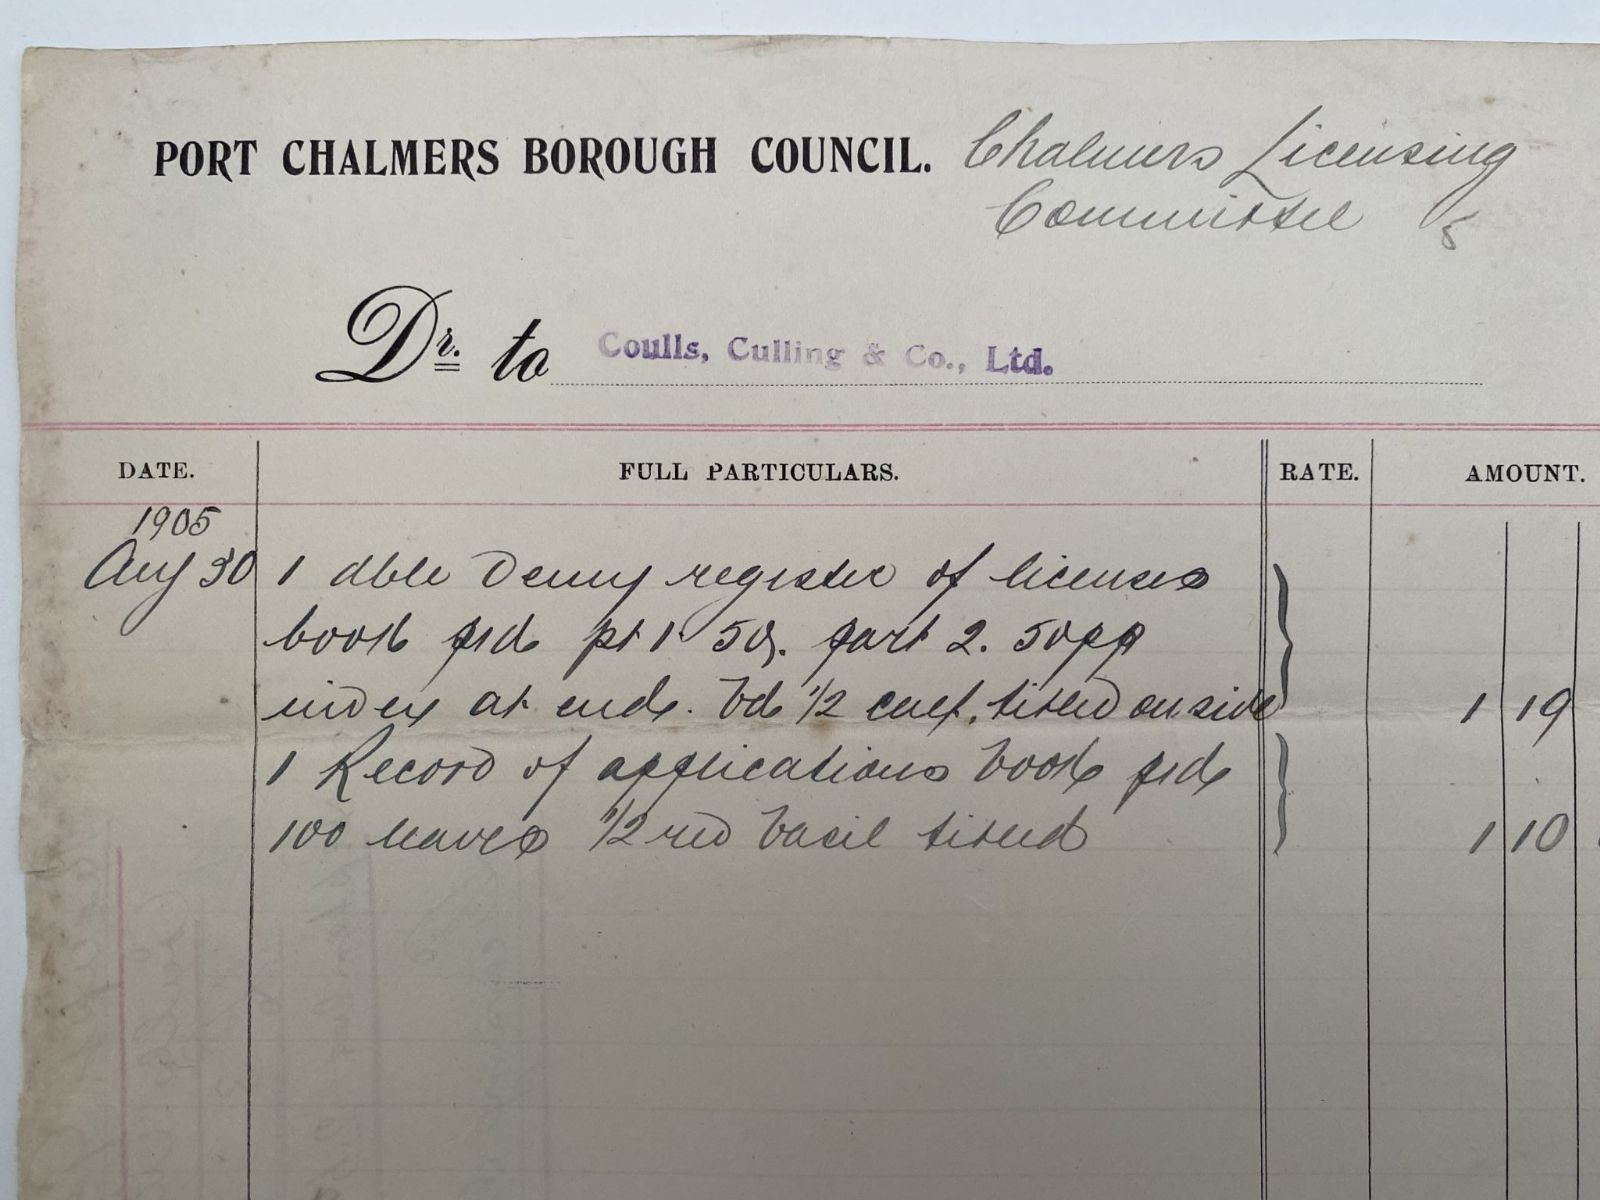 ANTIQUE INVOICE / RECEIPT: Port Chalmers Borough Council 1905